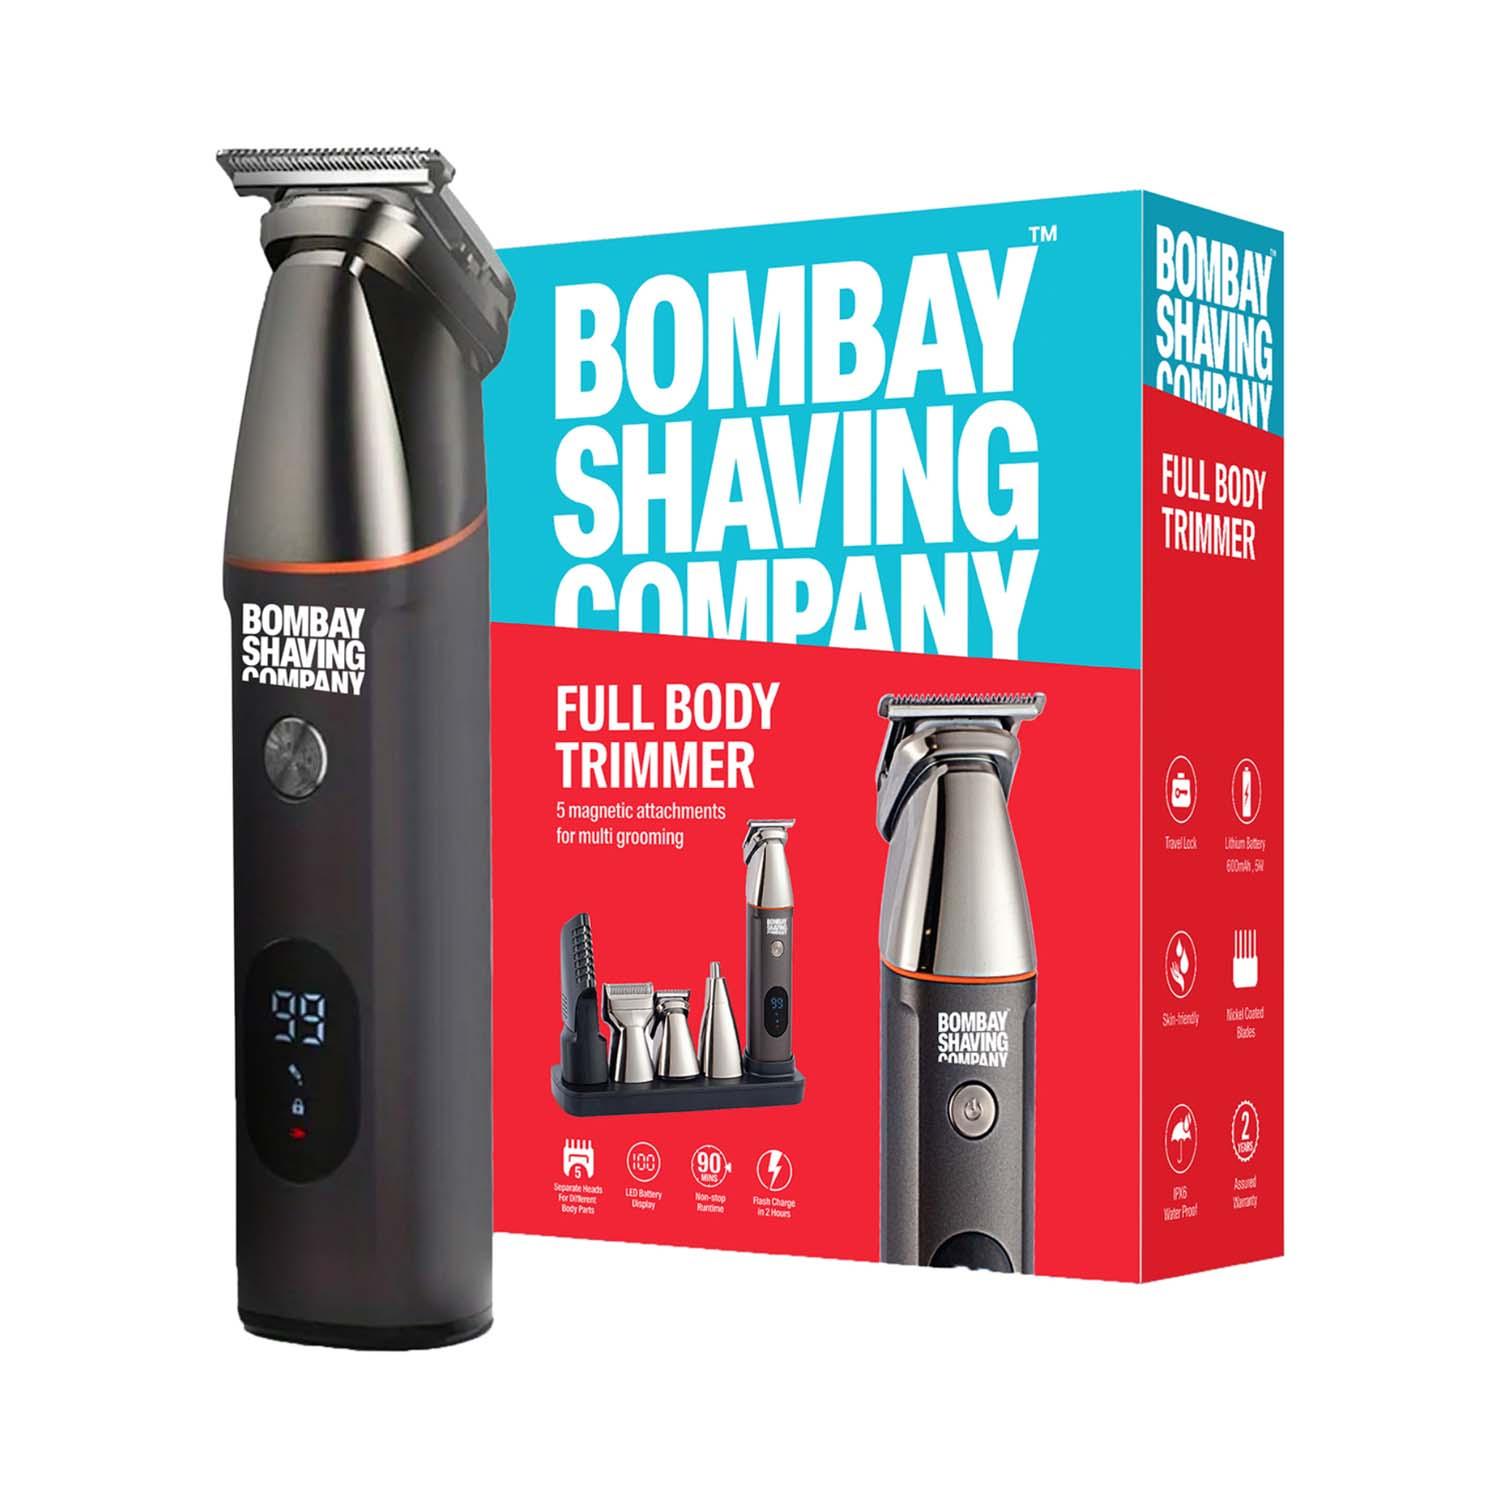 Bombay Shaving Company | Bombay Shaving Company 5in1 Multi Grooming Kit All in One Full Body Trimmer for Men (160 g)